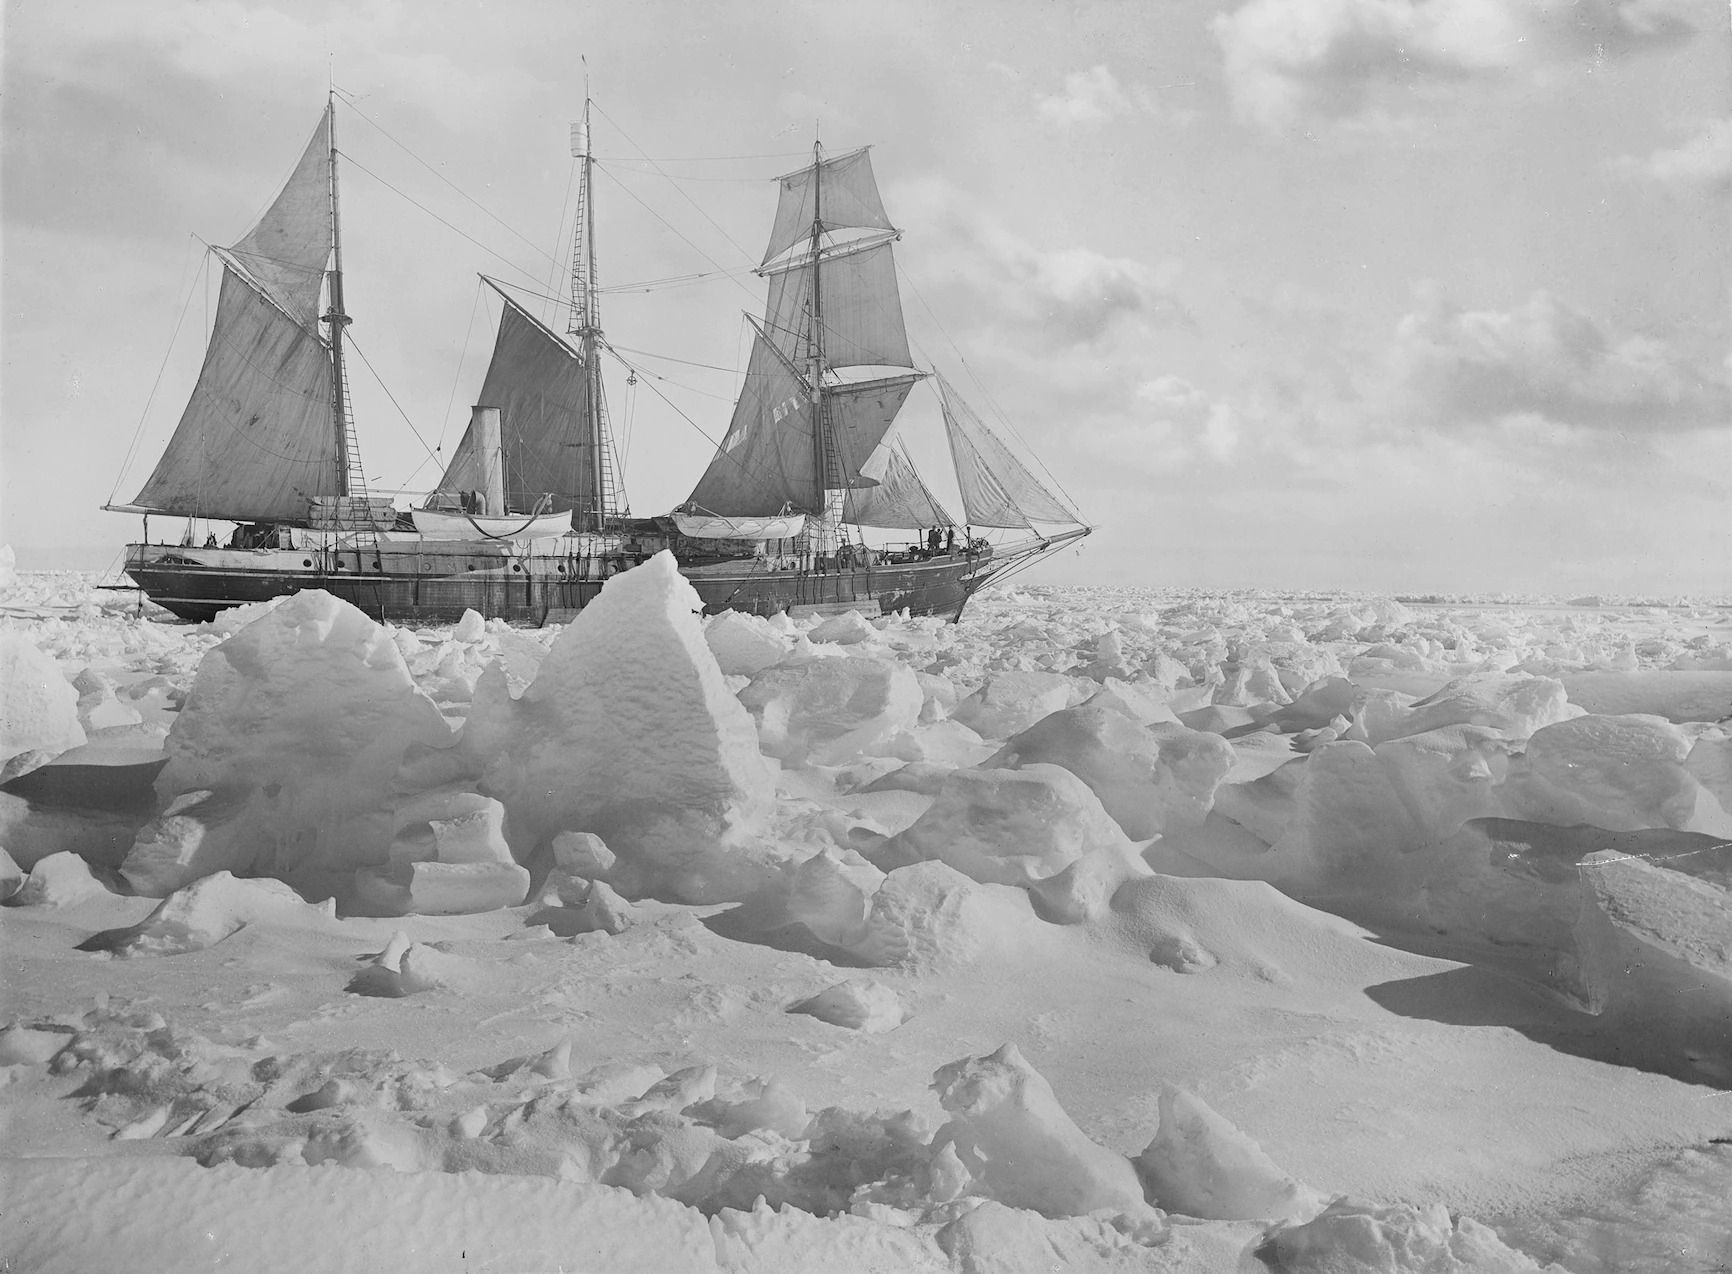 1915年2月14和15日，縱使船員努力想解救困在冰中的堅忍號，但這艘船還是難逃卡在冰中的命運。「「冰得到的東西就只能留在冰裡。」沙克爾頓曾這麼說。在導致堅忍號沉沒的那些霧濛濛的日子裡，船長兼導航專家法蘭克．沃斯禮（Frank Worsley）無法測量到正確的位置讀數。沒有可靠的數據，一個多世紀以來，該船的正確位置一直是個謎。PHOTOGRAPH BY FRANK HURLEY, ROYAL GEOGRAPHICAL SOCIETY, GETTY IMAGES 